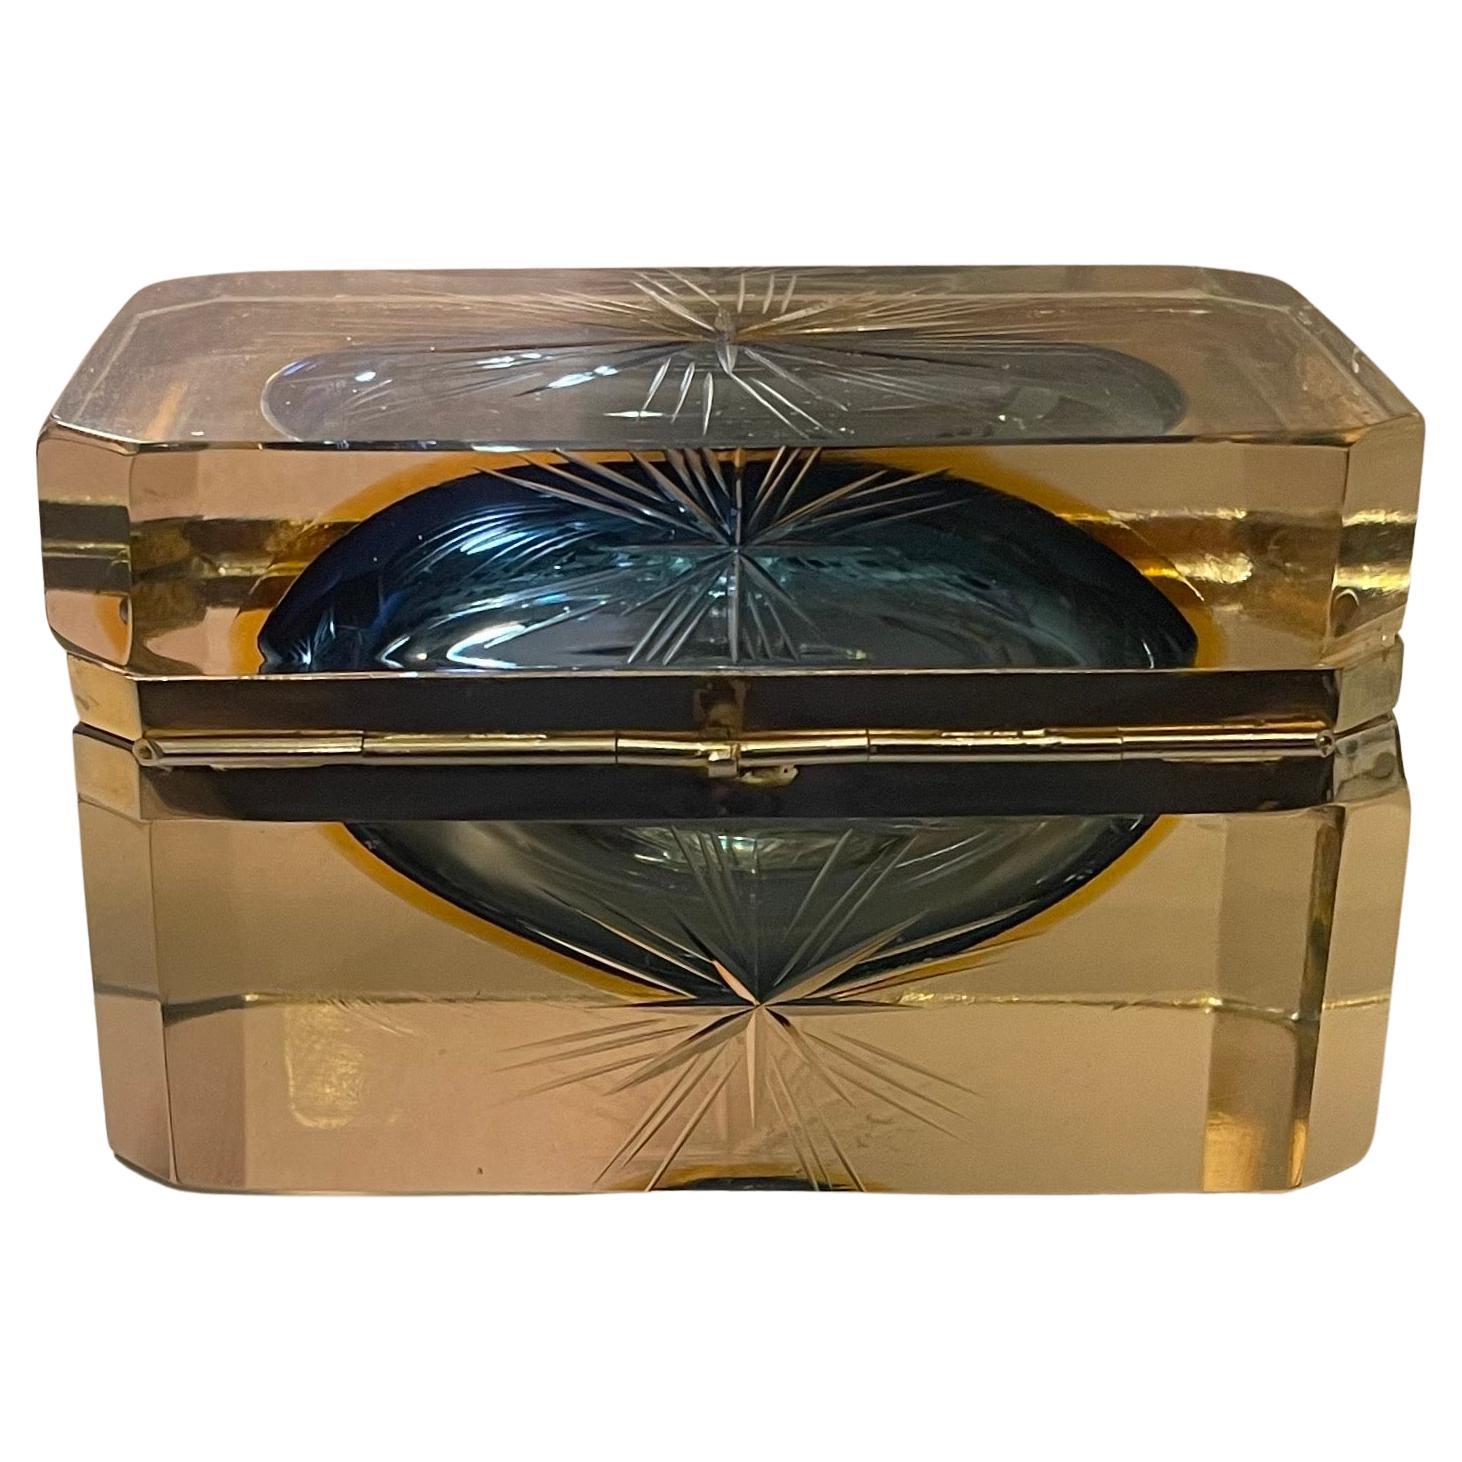 Merveilleuse boîte à bijoux / coffret en verre / cristal d'art moderne du milieu du siècle, avec de belles gravures en étoile et des ferrures en laiton doré, dans le style et la manière de Baccarat.